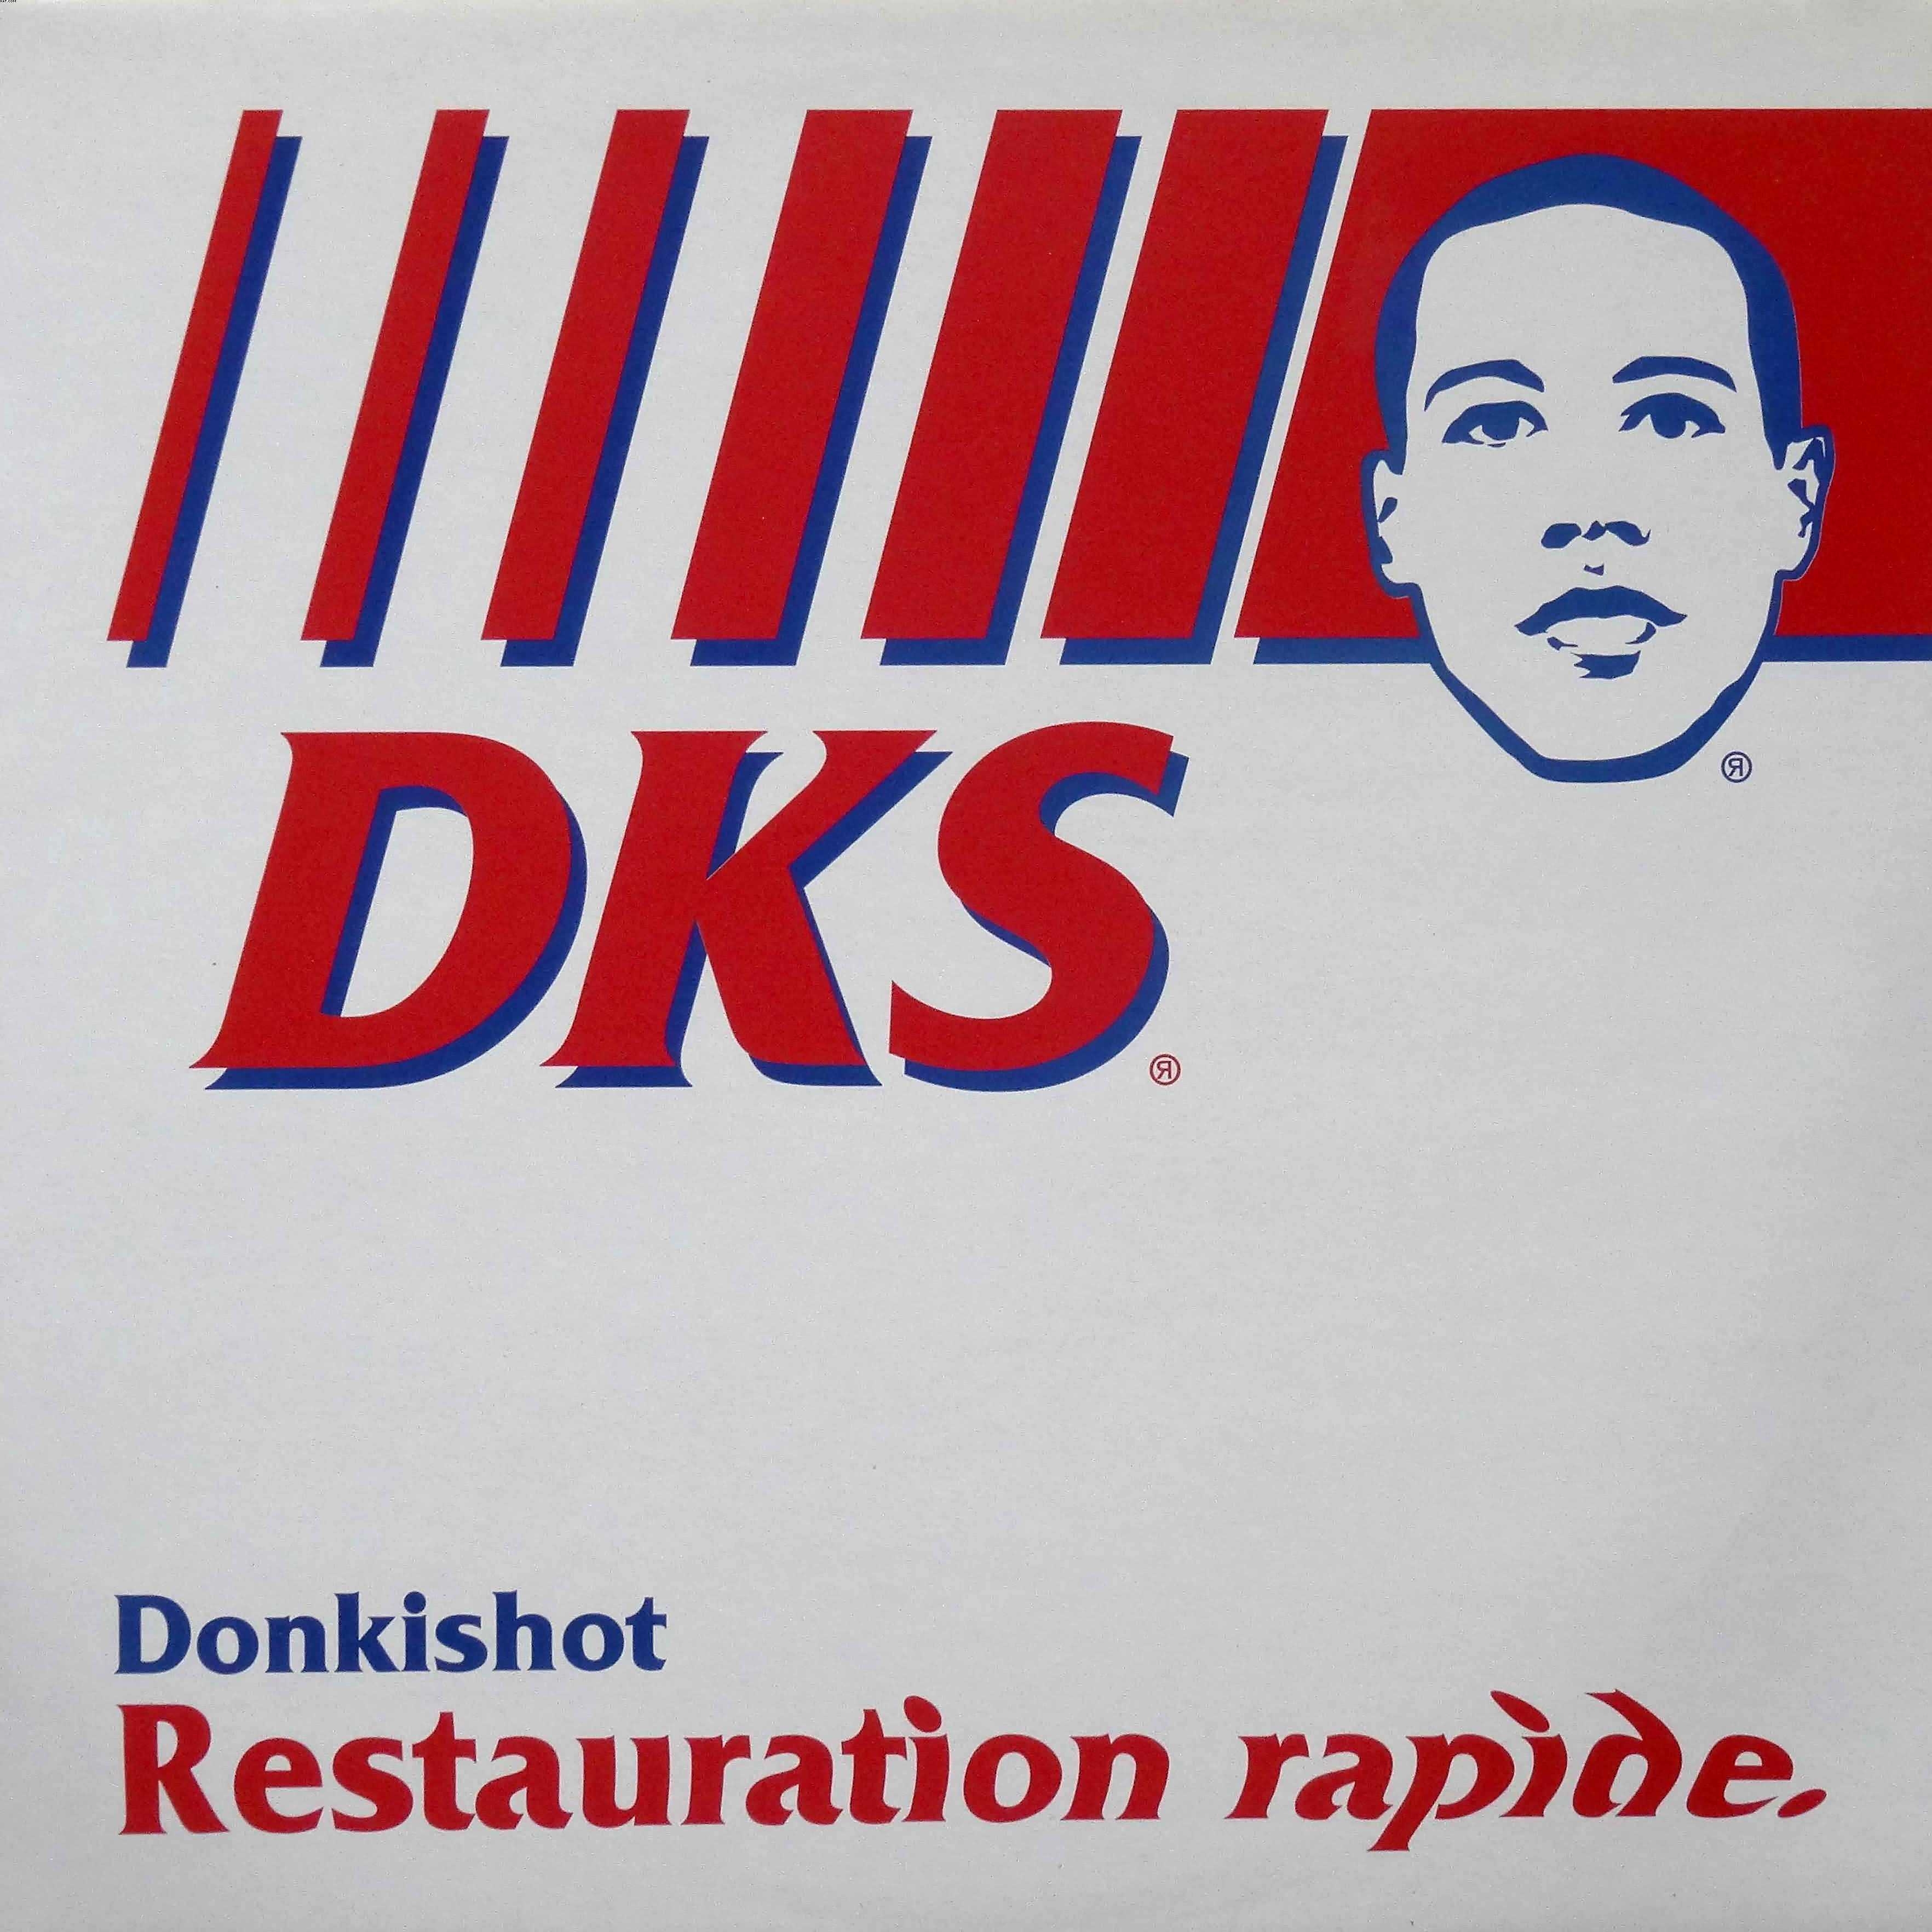 Vinyle DKS - Donkishot - Rstauration rapide (Occasion) de sur Scredboutique.com